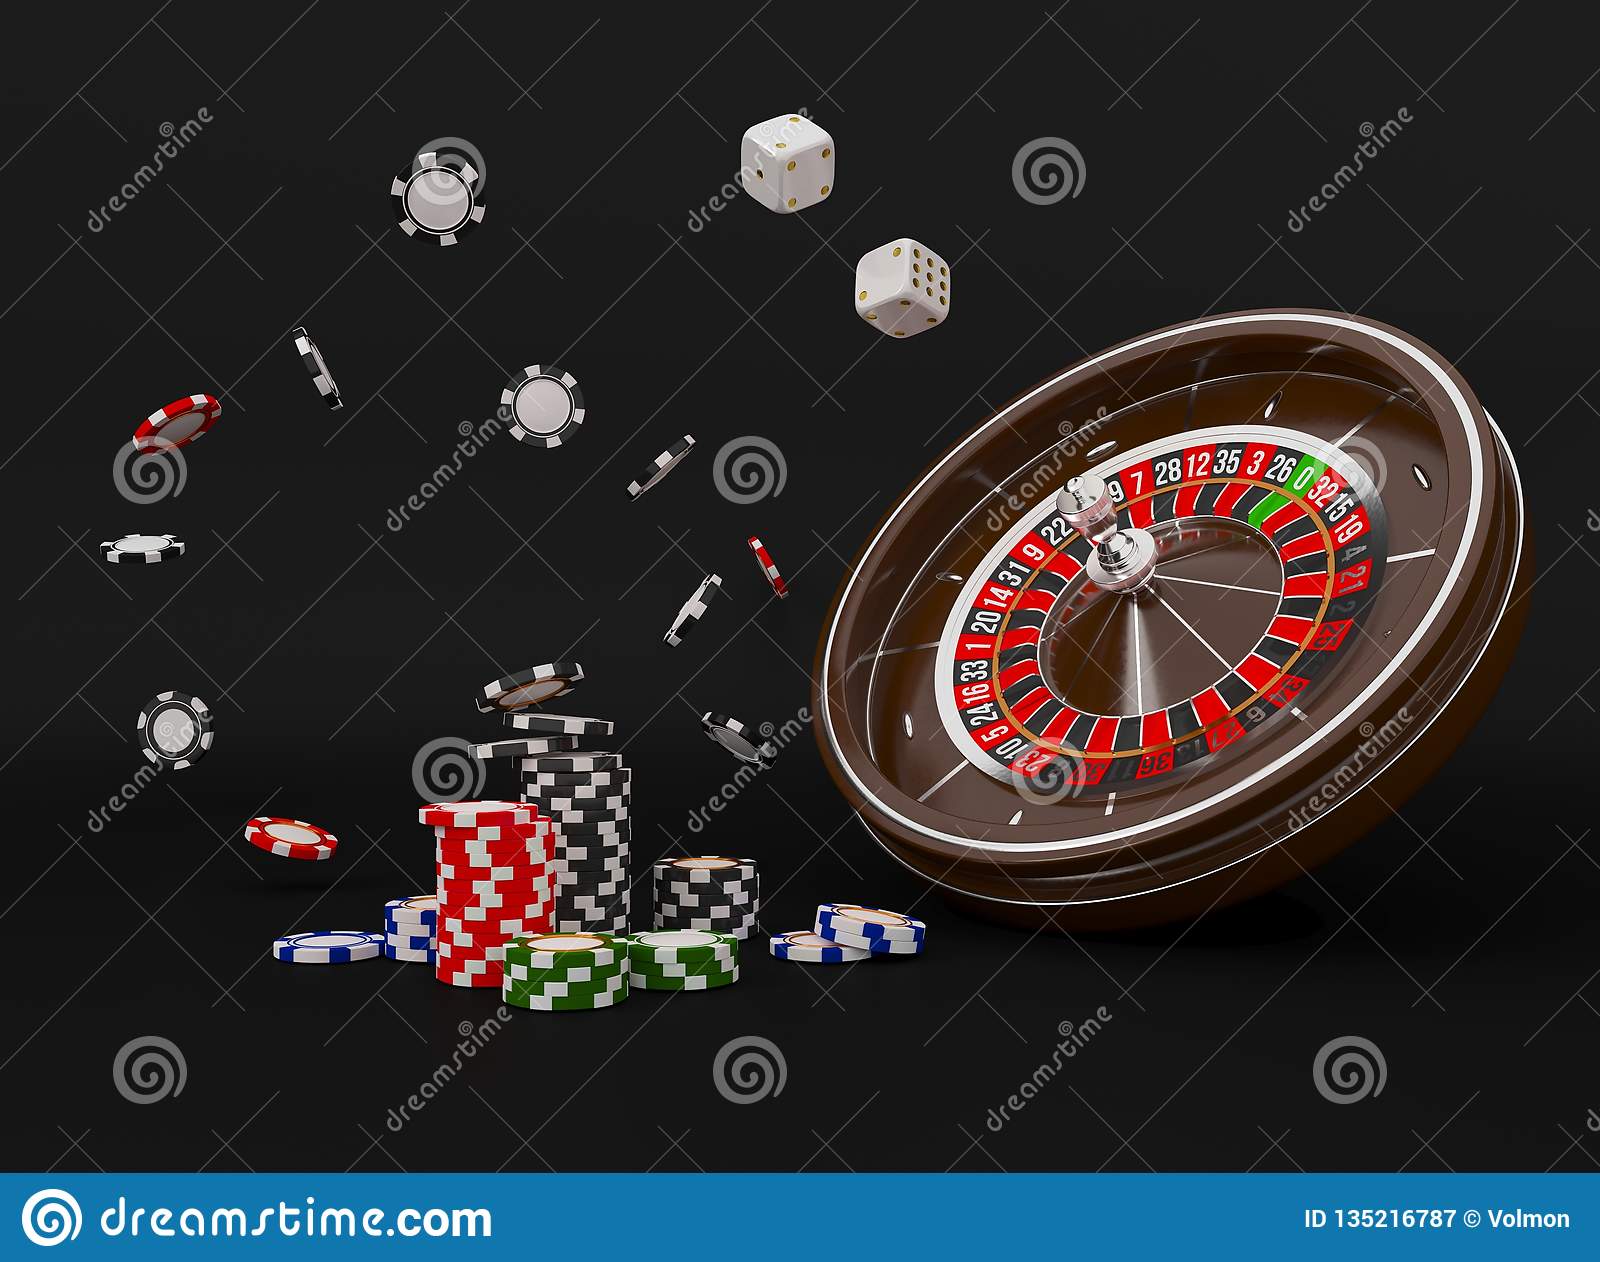 Slot machine casino name